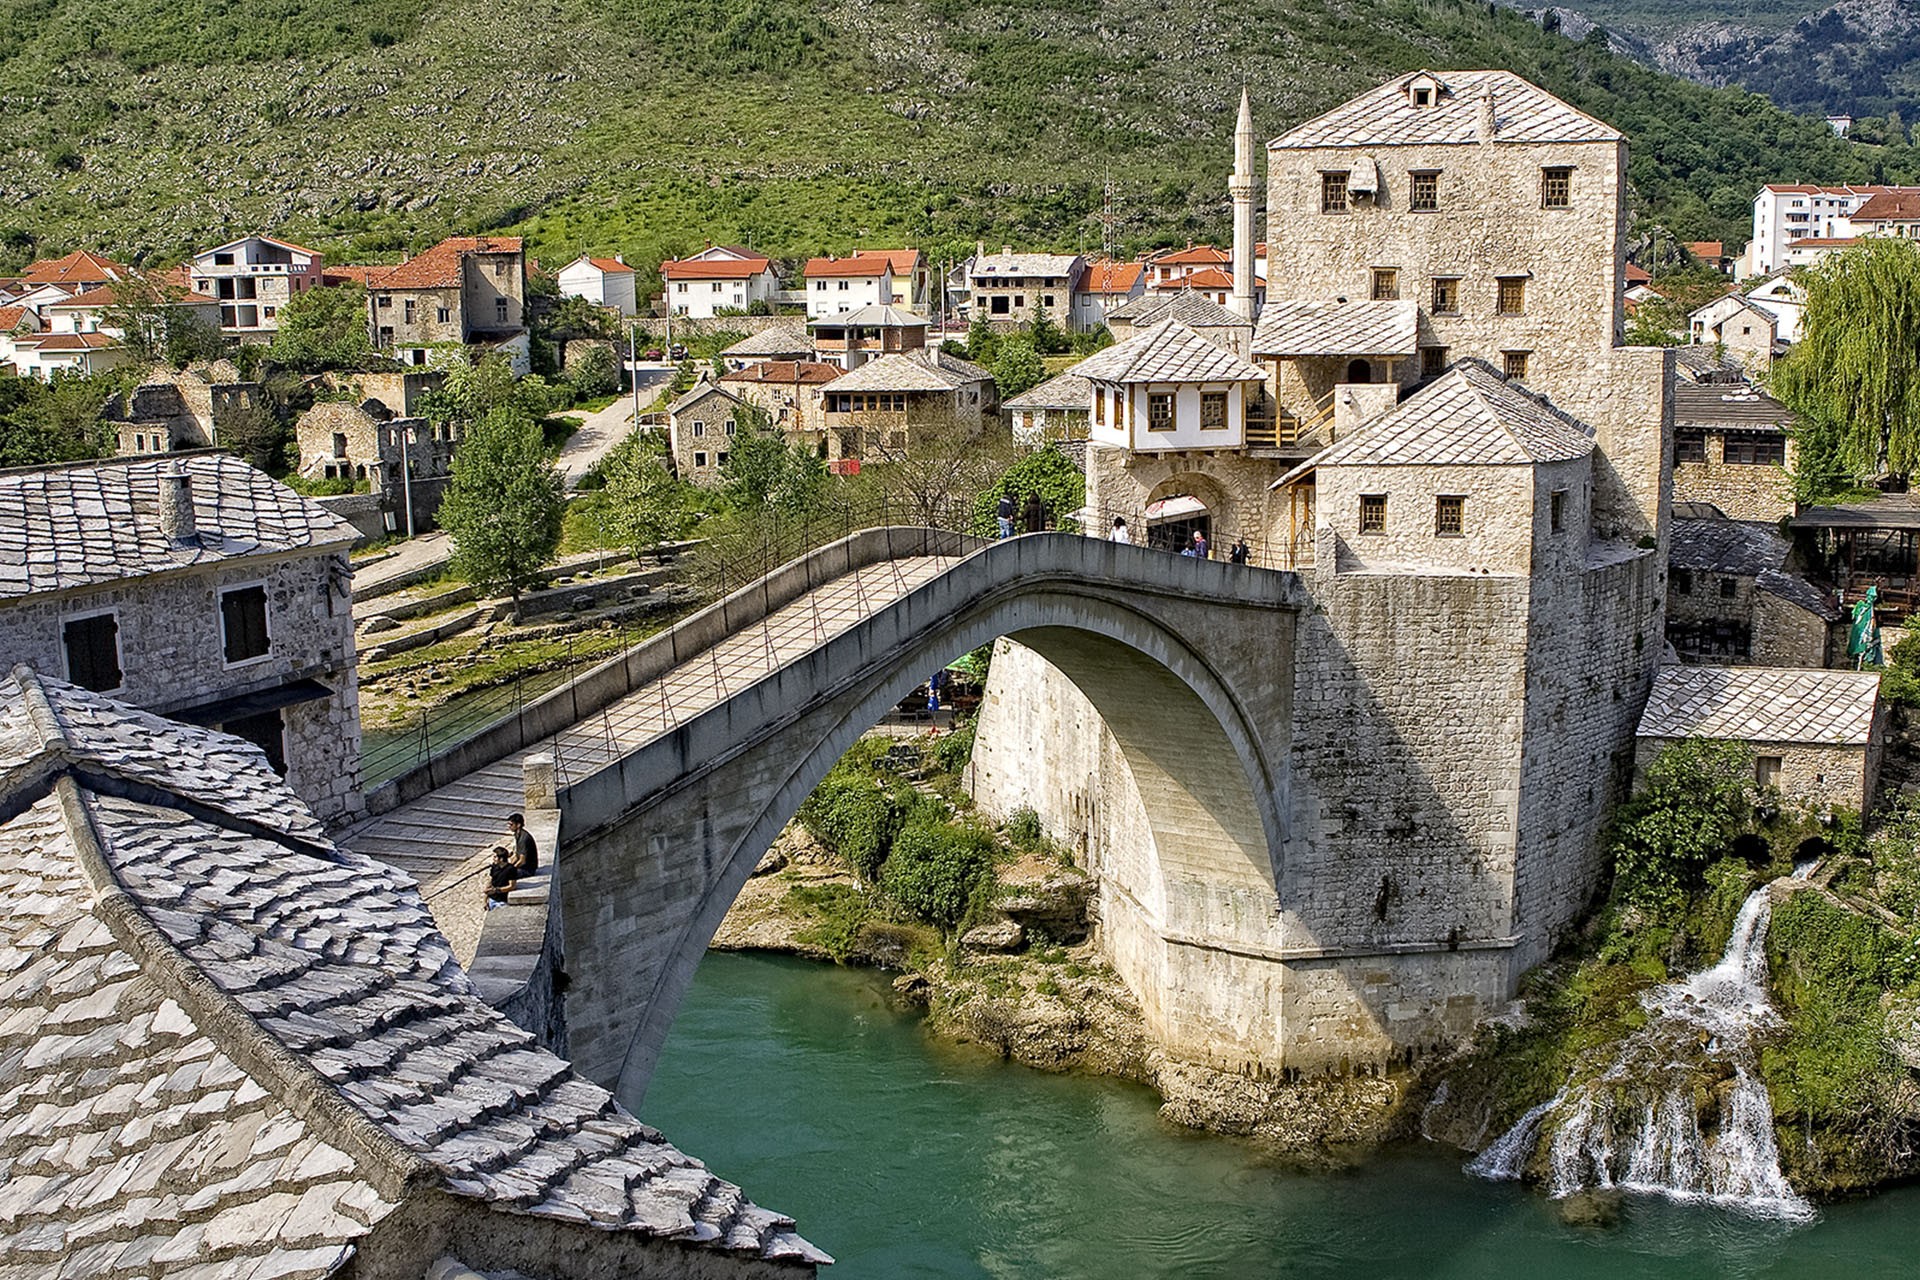 Lạc bước ở thị trấn cổ tích dưới trần thế Mostar chẳng muốn về